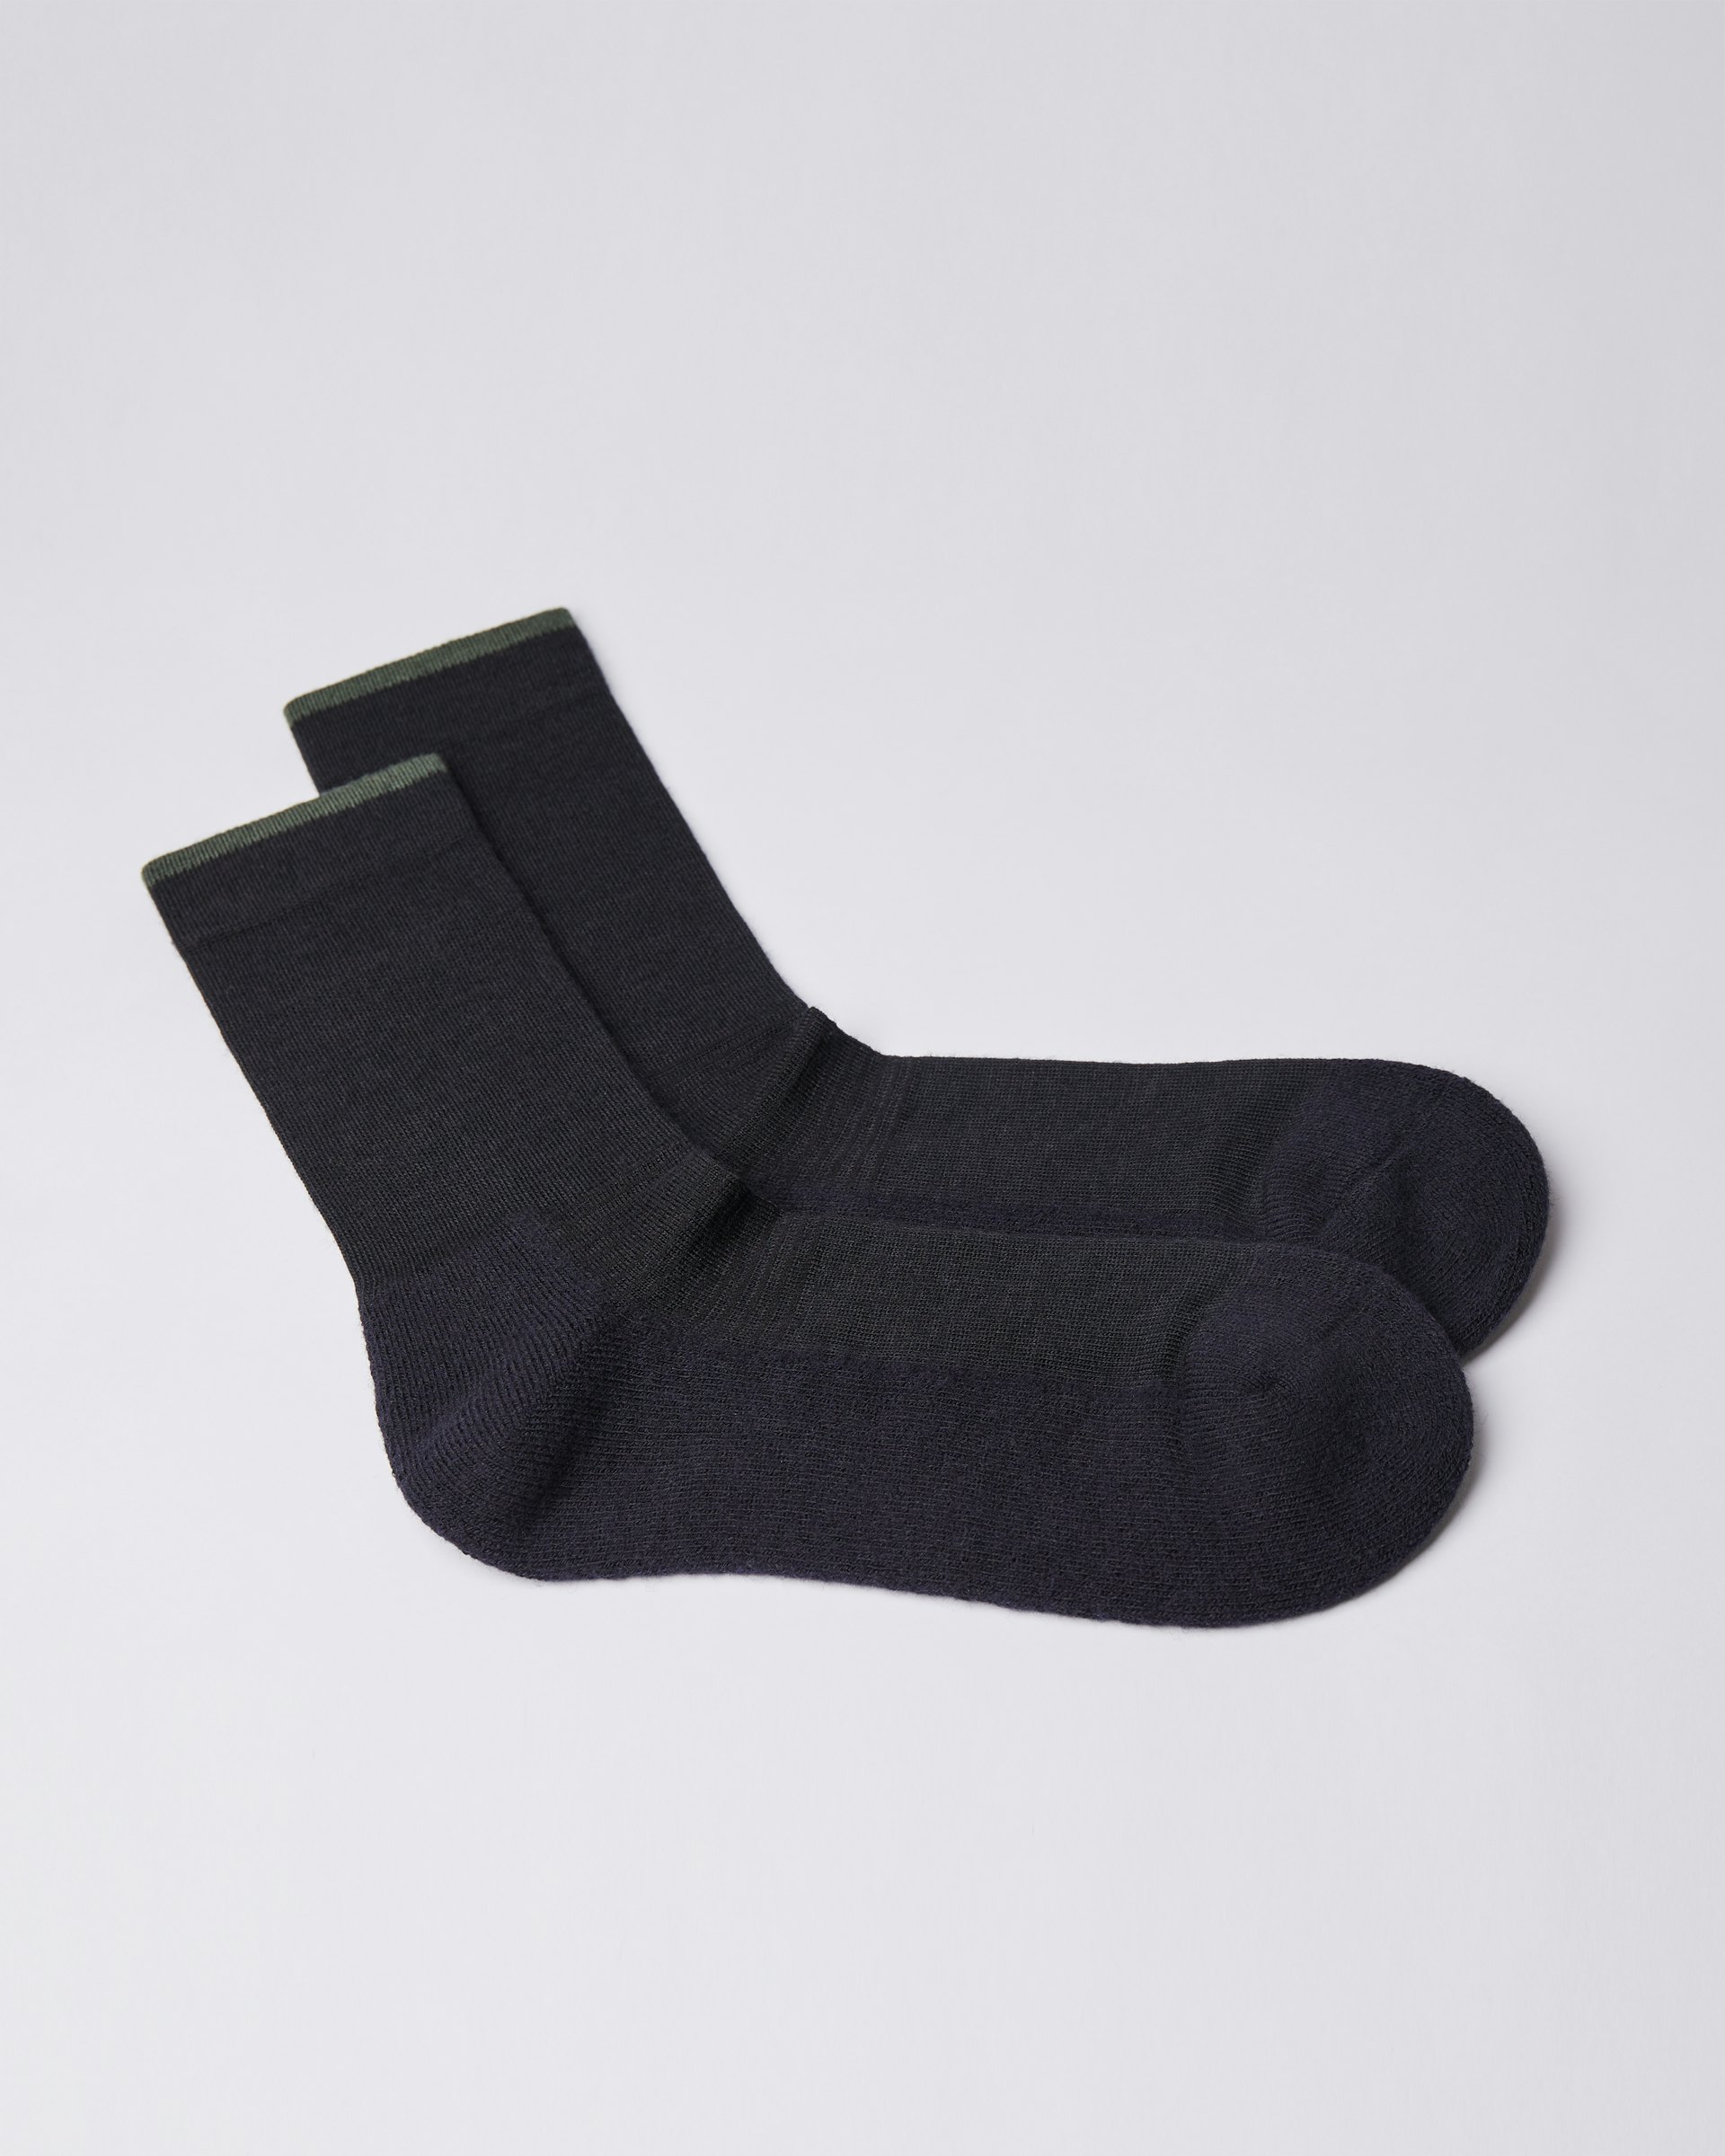 Wool Sock is in color black & green (3 of 3)